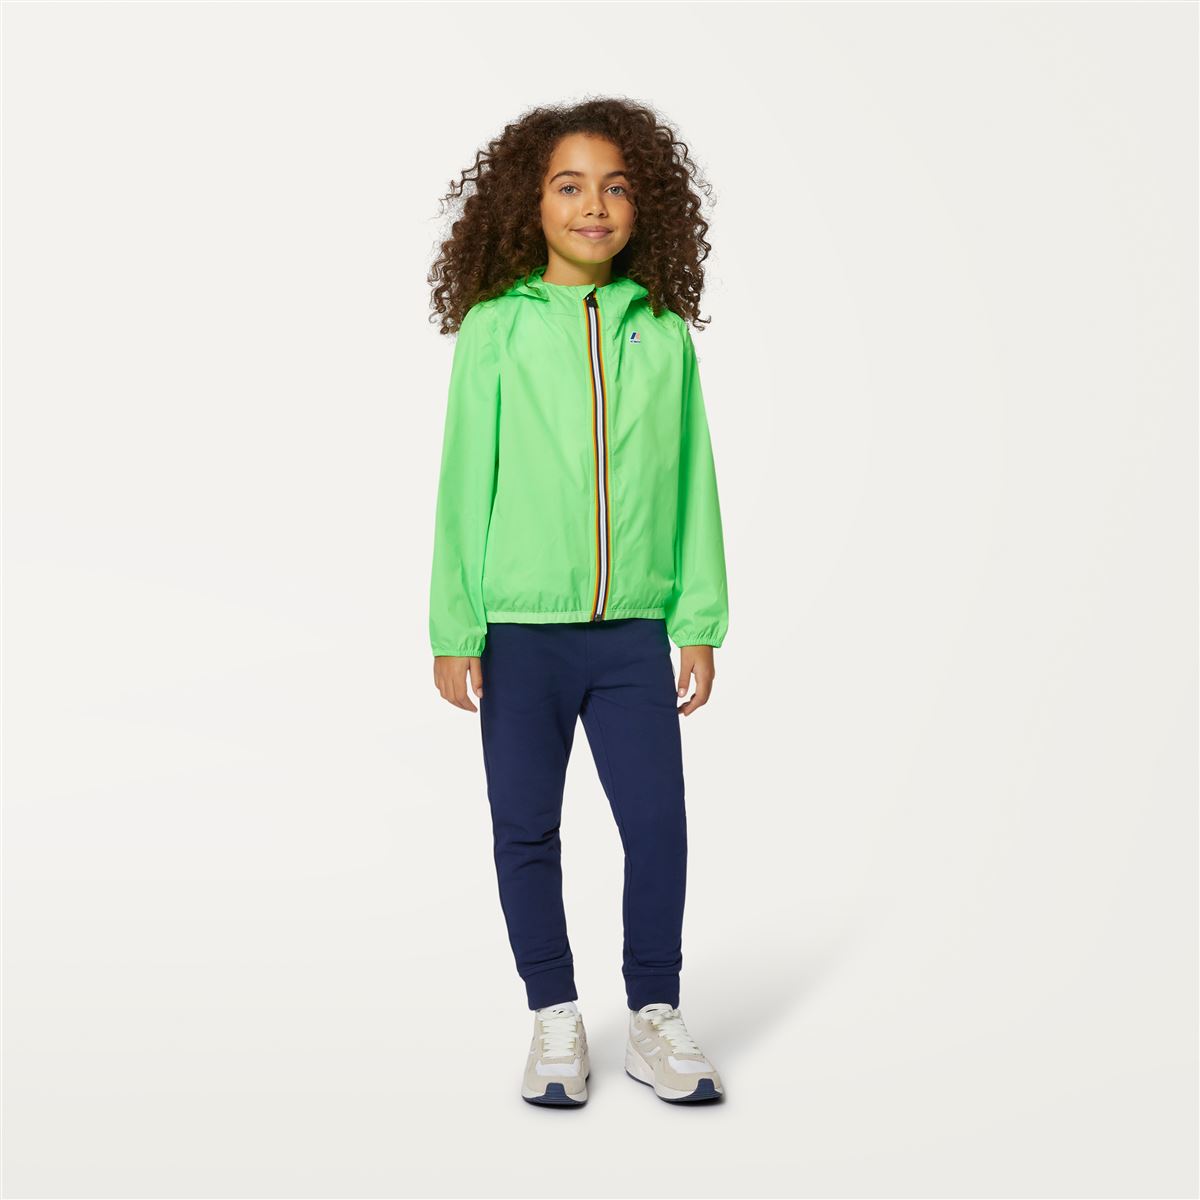 Claude - Kids Packable Full Zip Rain Jacket in Green Fluo